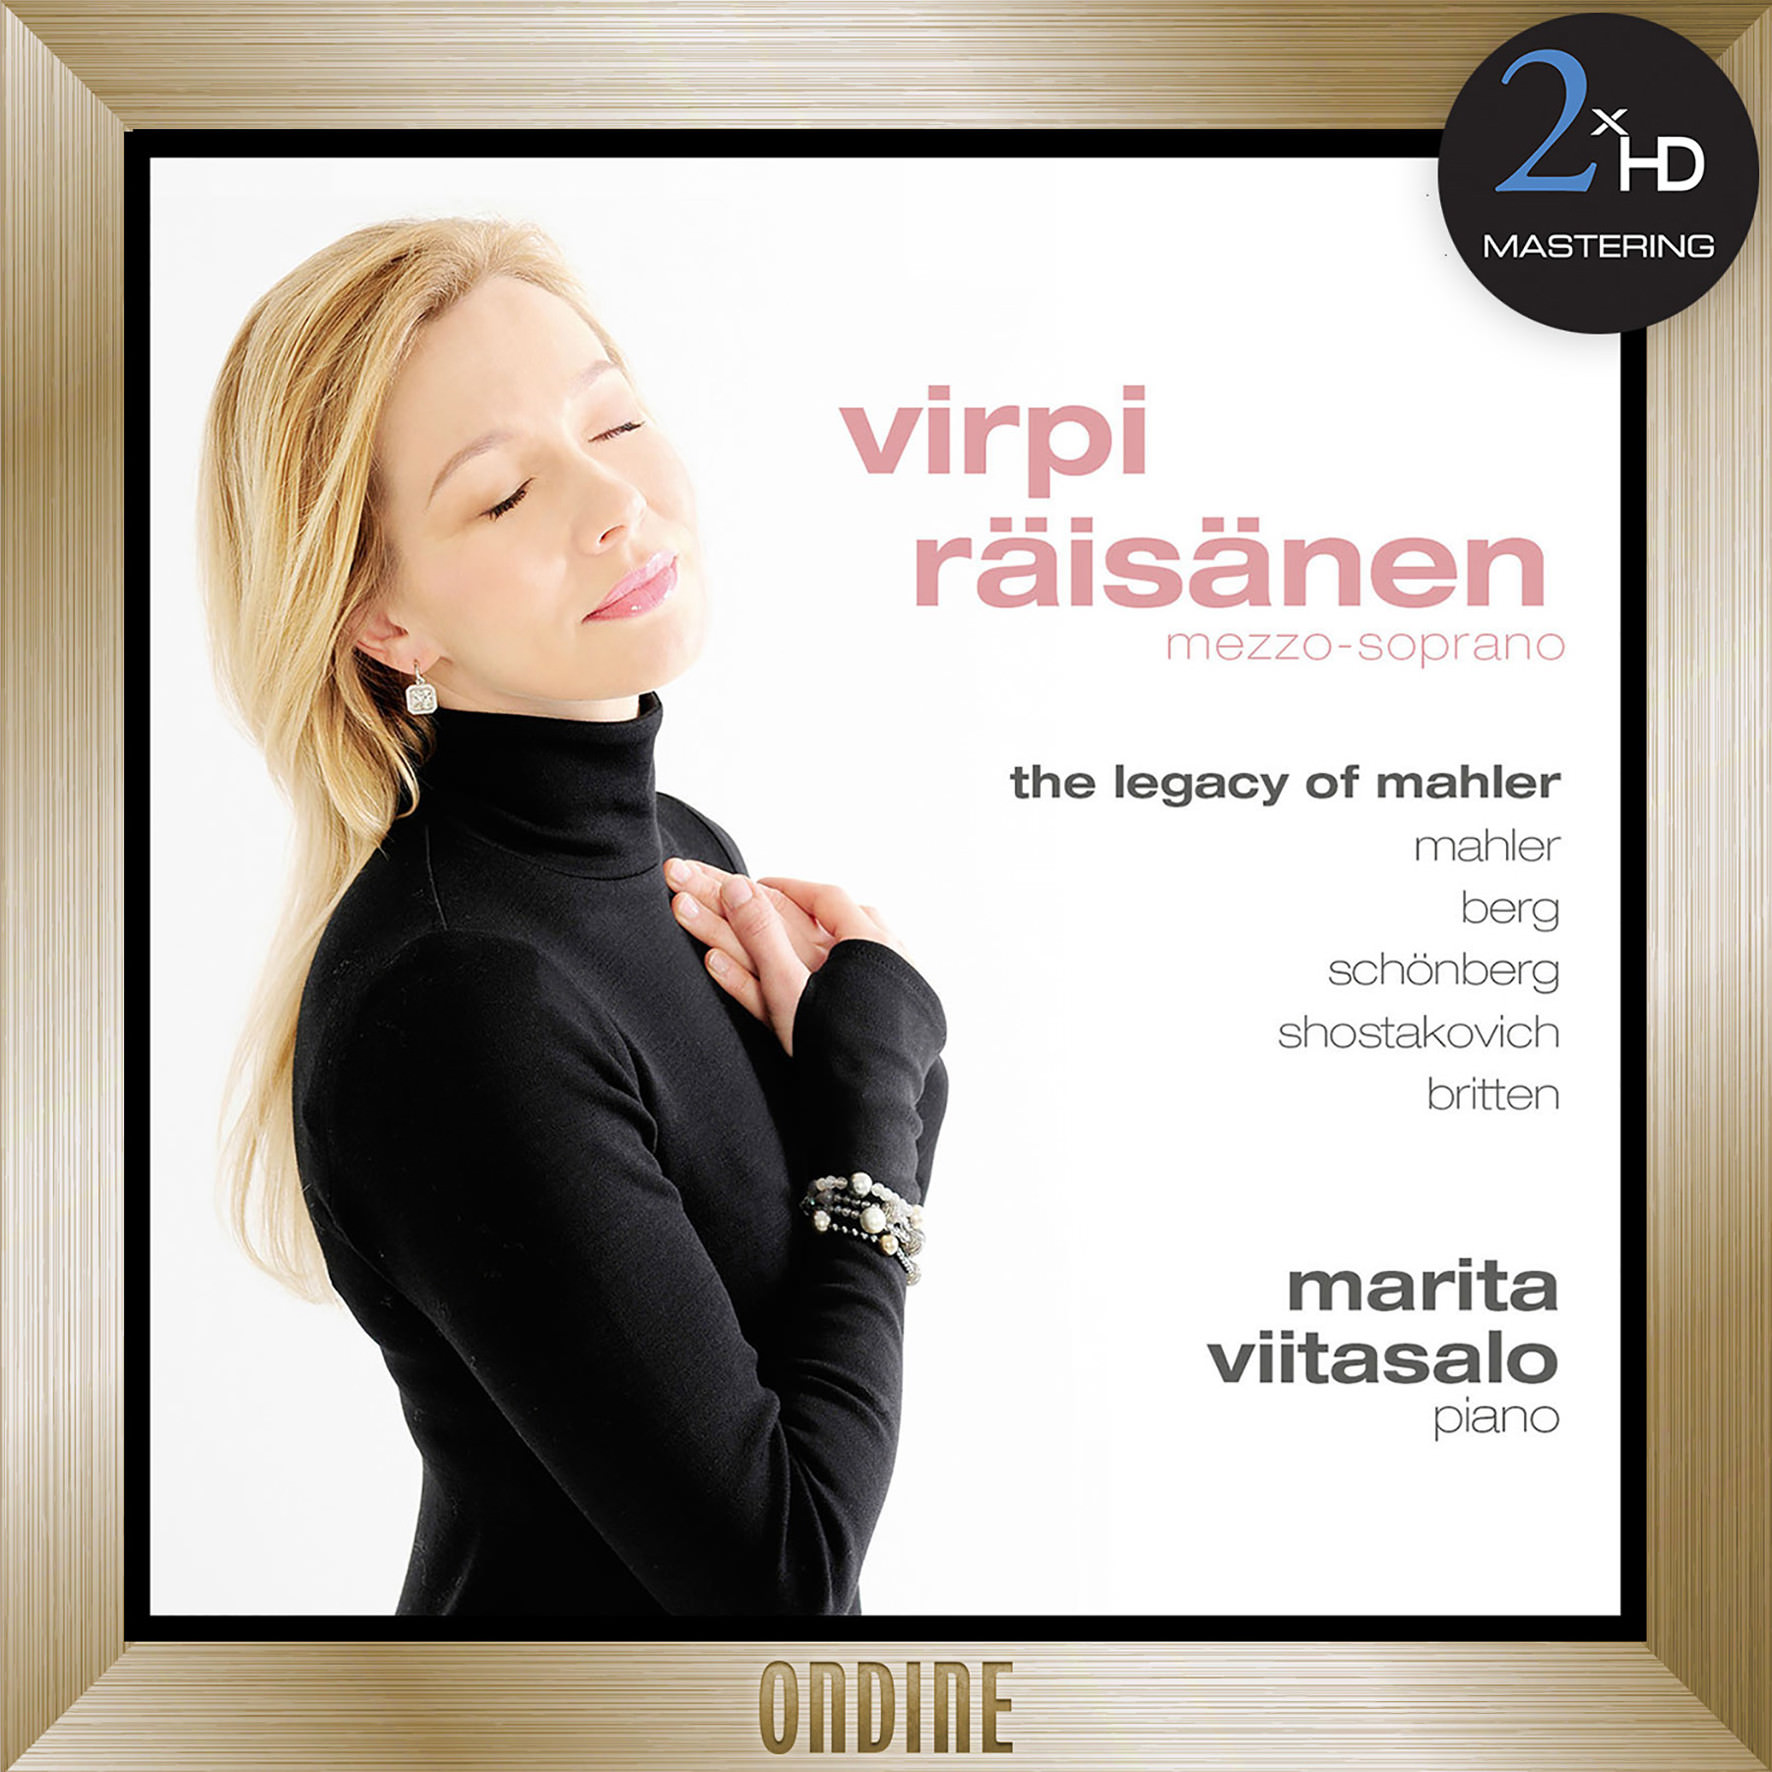 Virpi Raisanen, Marita Viitasalo – The Legacy of Mahler (2012/2016) [HDTracks FLAC 24bit/192kHz]